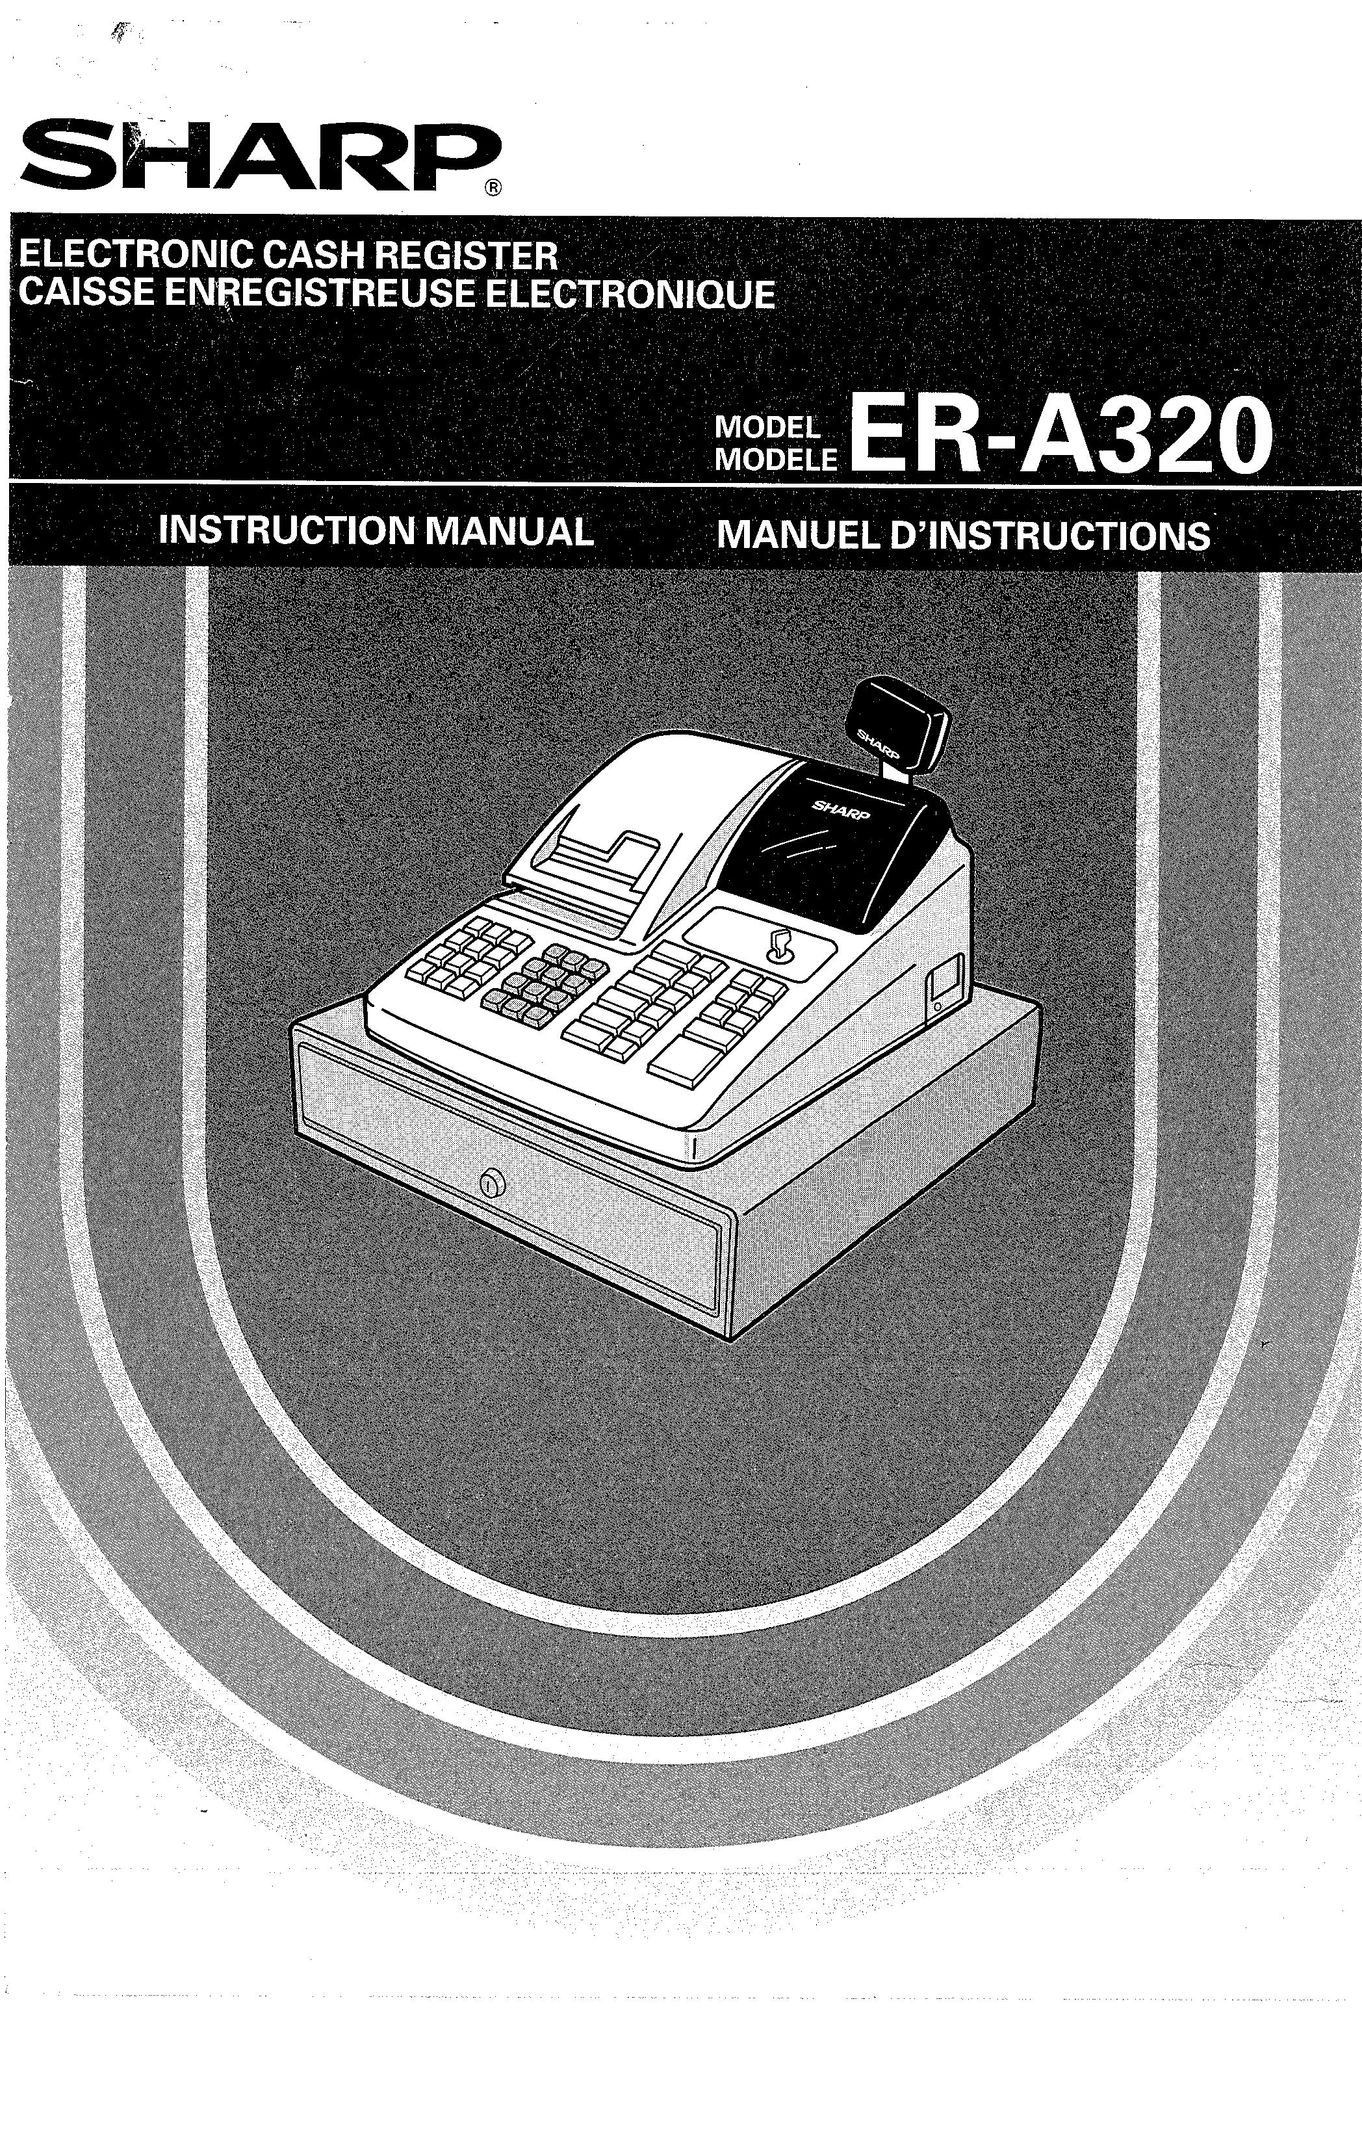 Sharp ER-A320 Cash Register User Manual